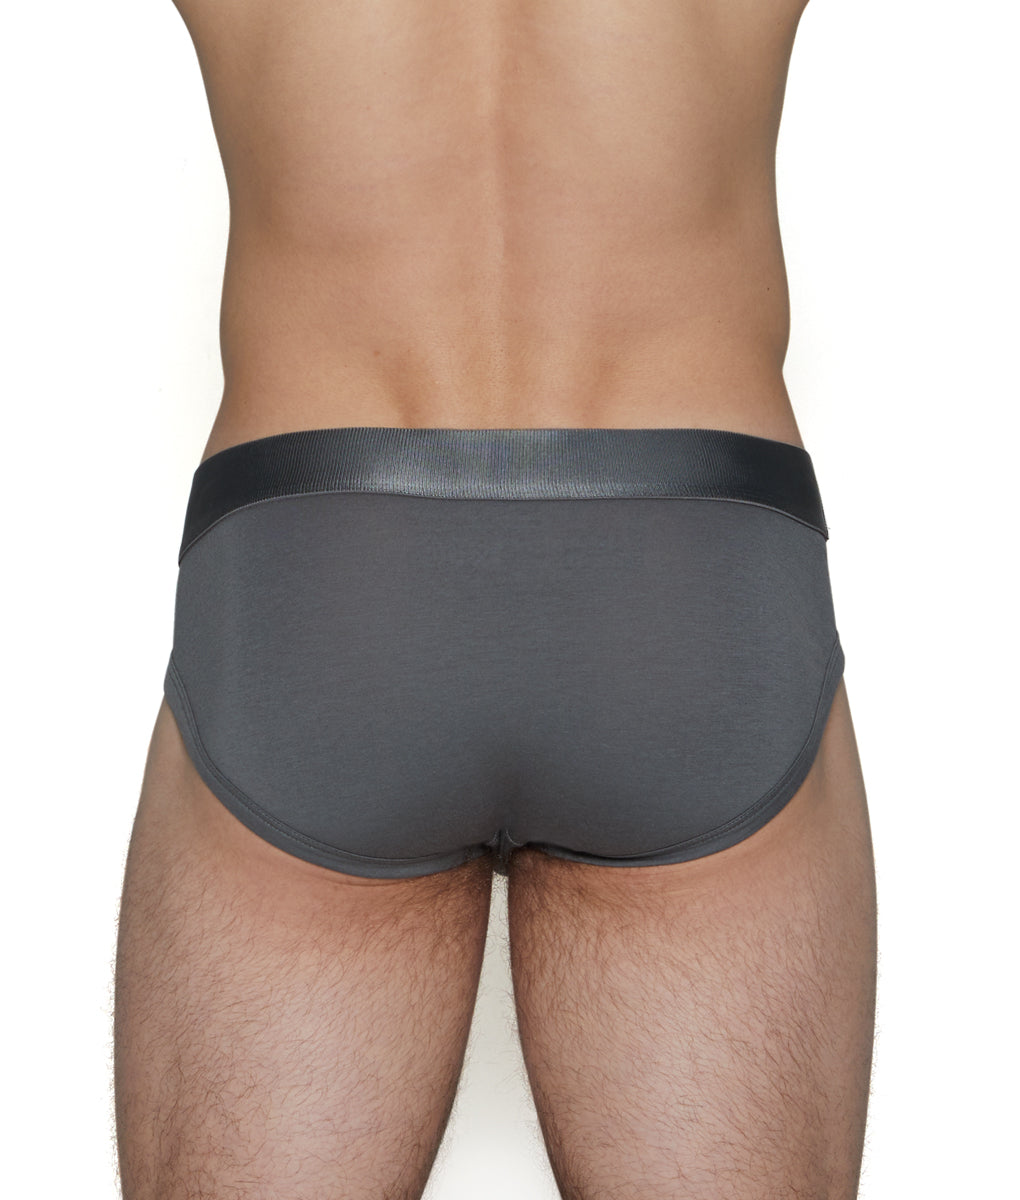 underwear #underwearformen #underwearexpert #mensunderwear #mensundies  #mensbriefs #iockstrap#boxers…